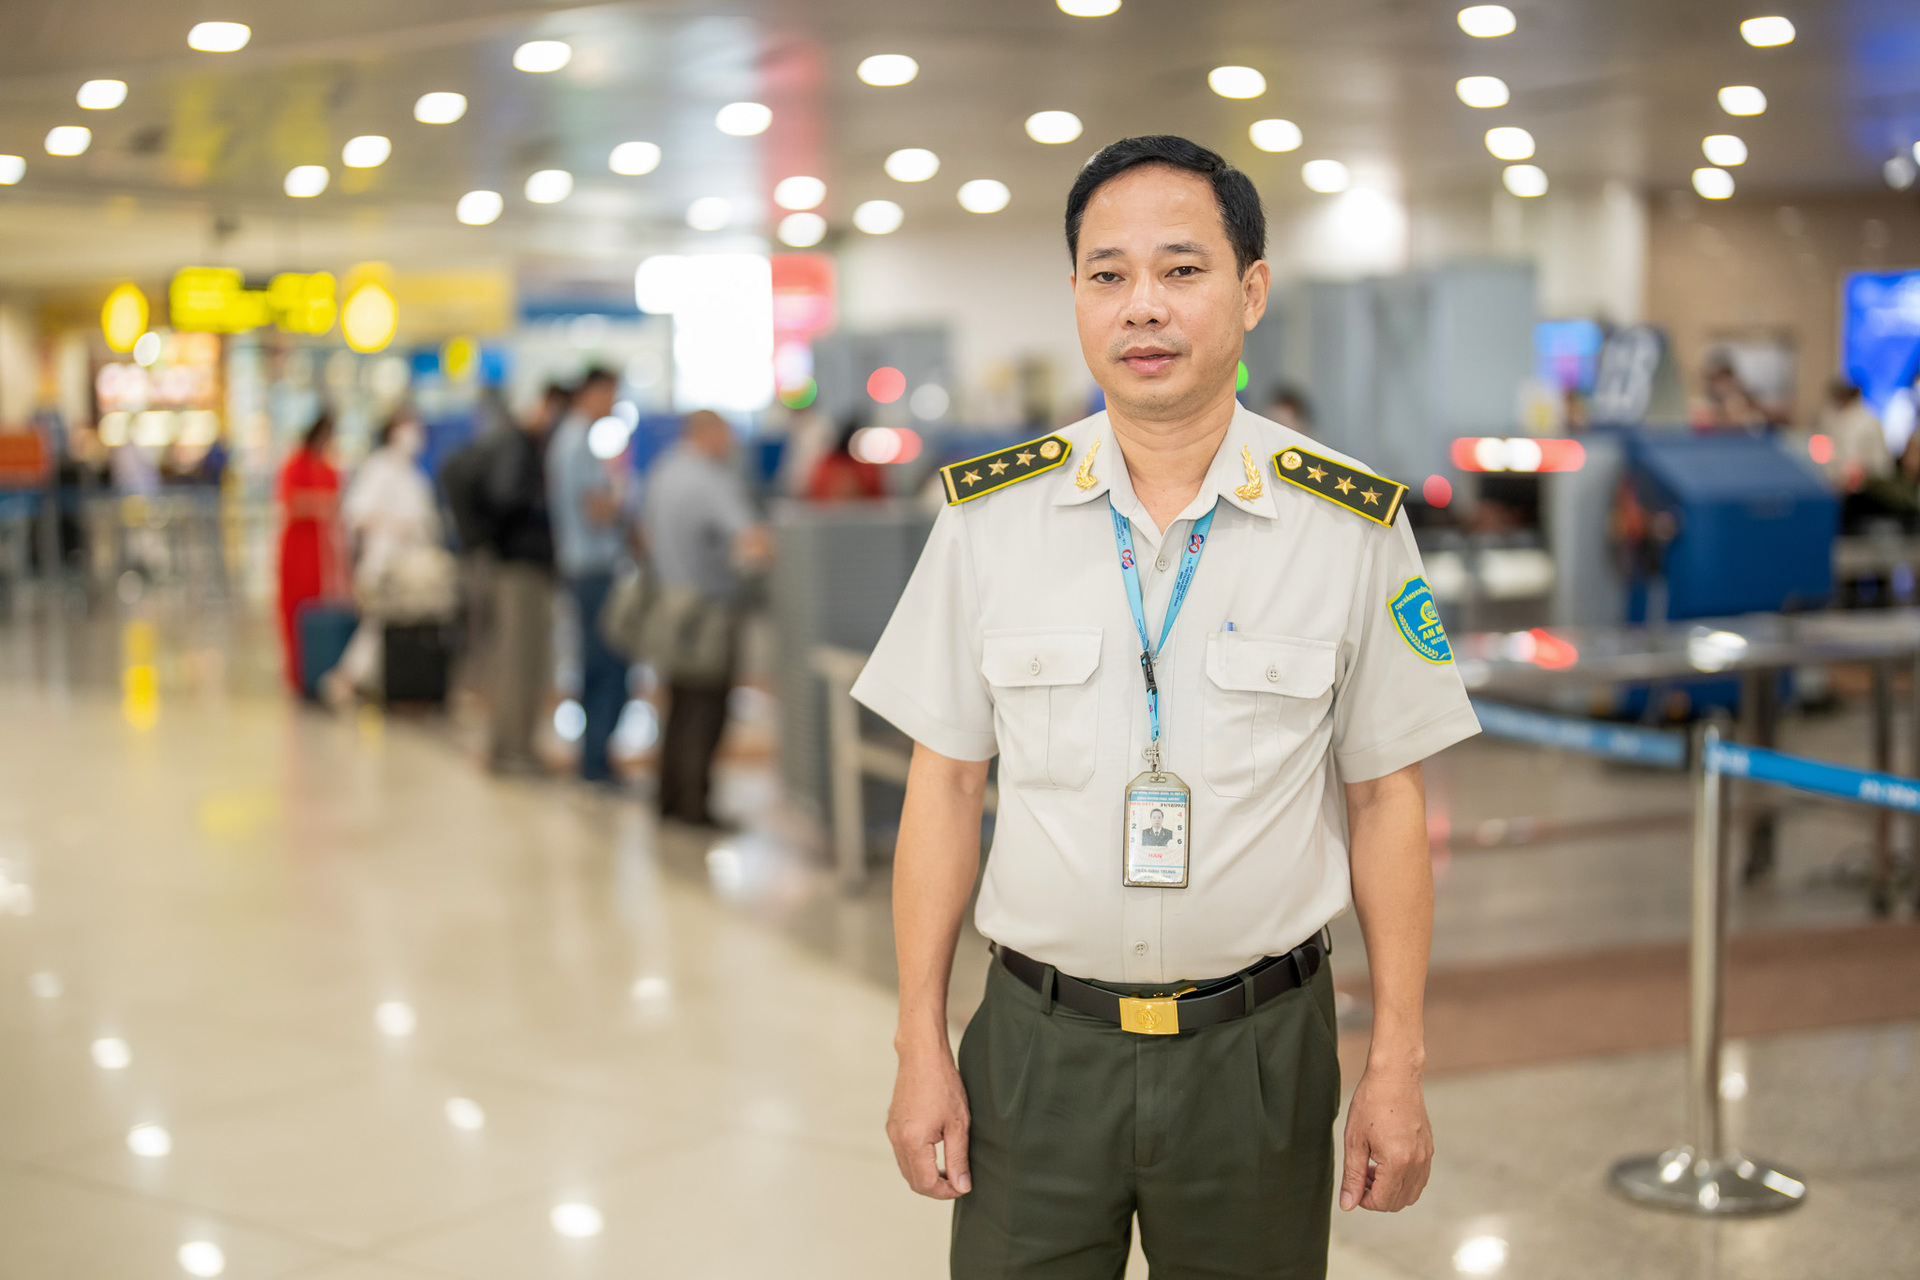 Ông Trần Đình Trung, Phó Đội trưởng Đội An ninh Soi chiếu quốc nội, Trung tâm an ninh hàng không Nội Bài, Cảng hàng không quốc tế Nội Bài.